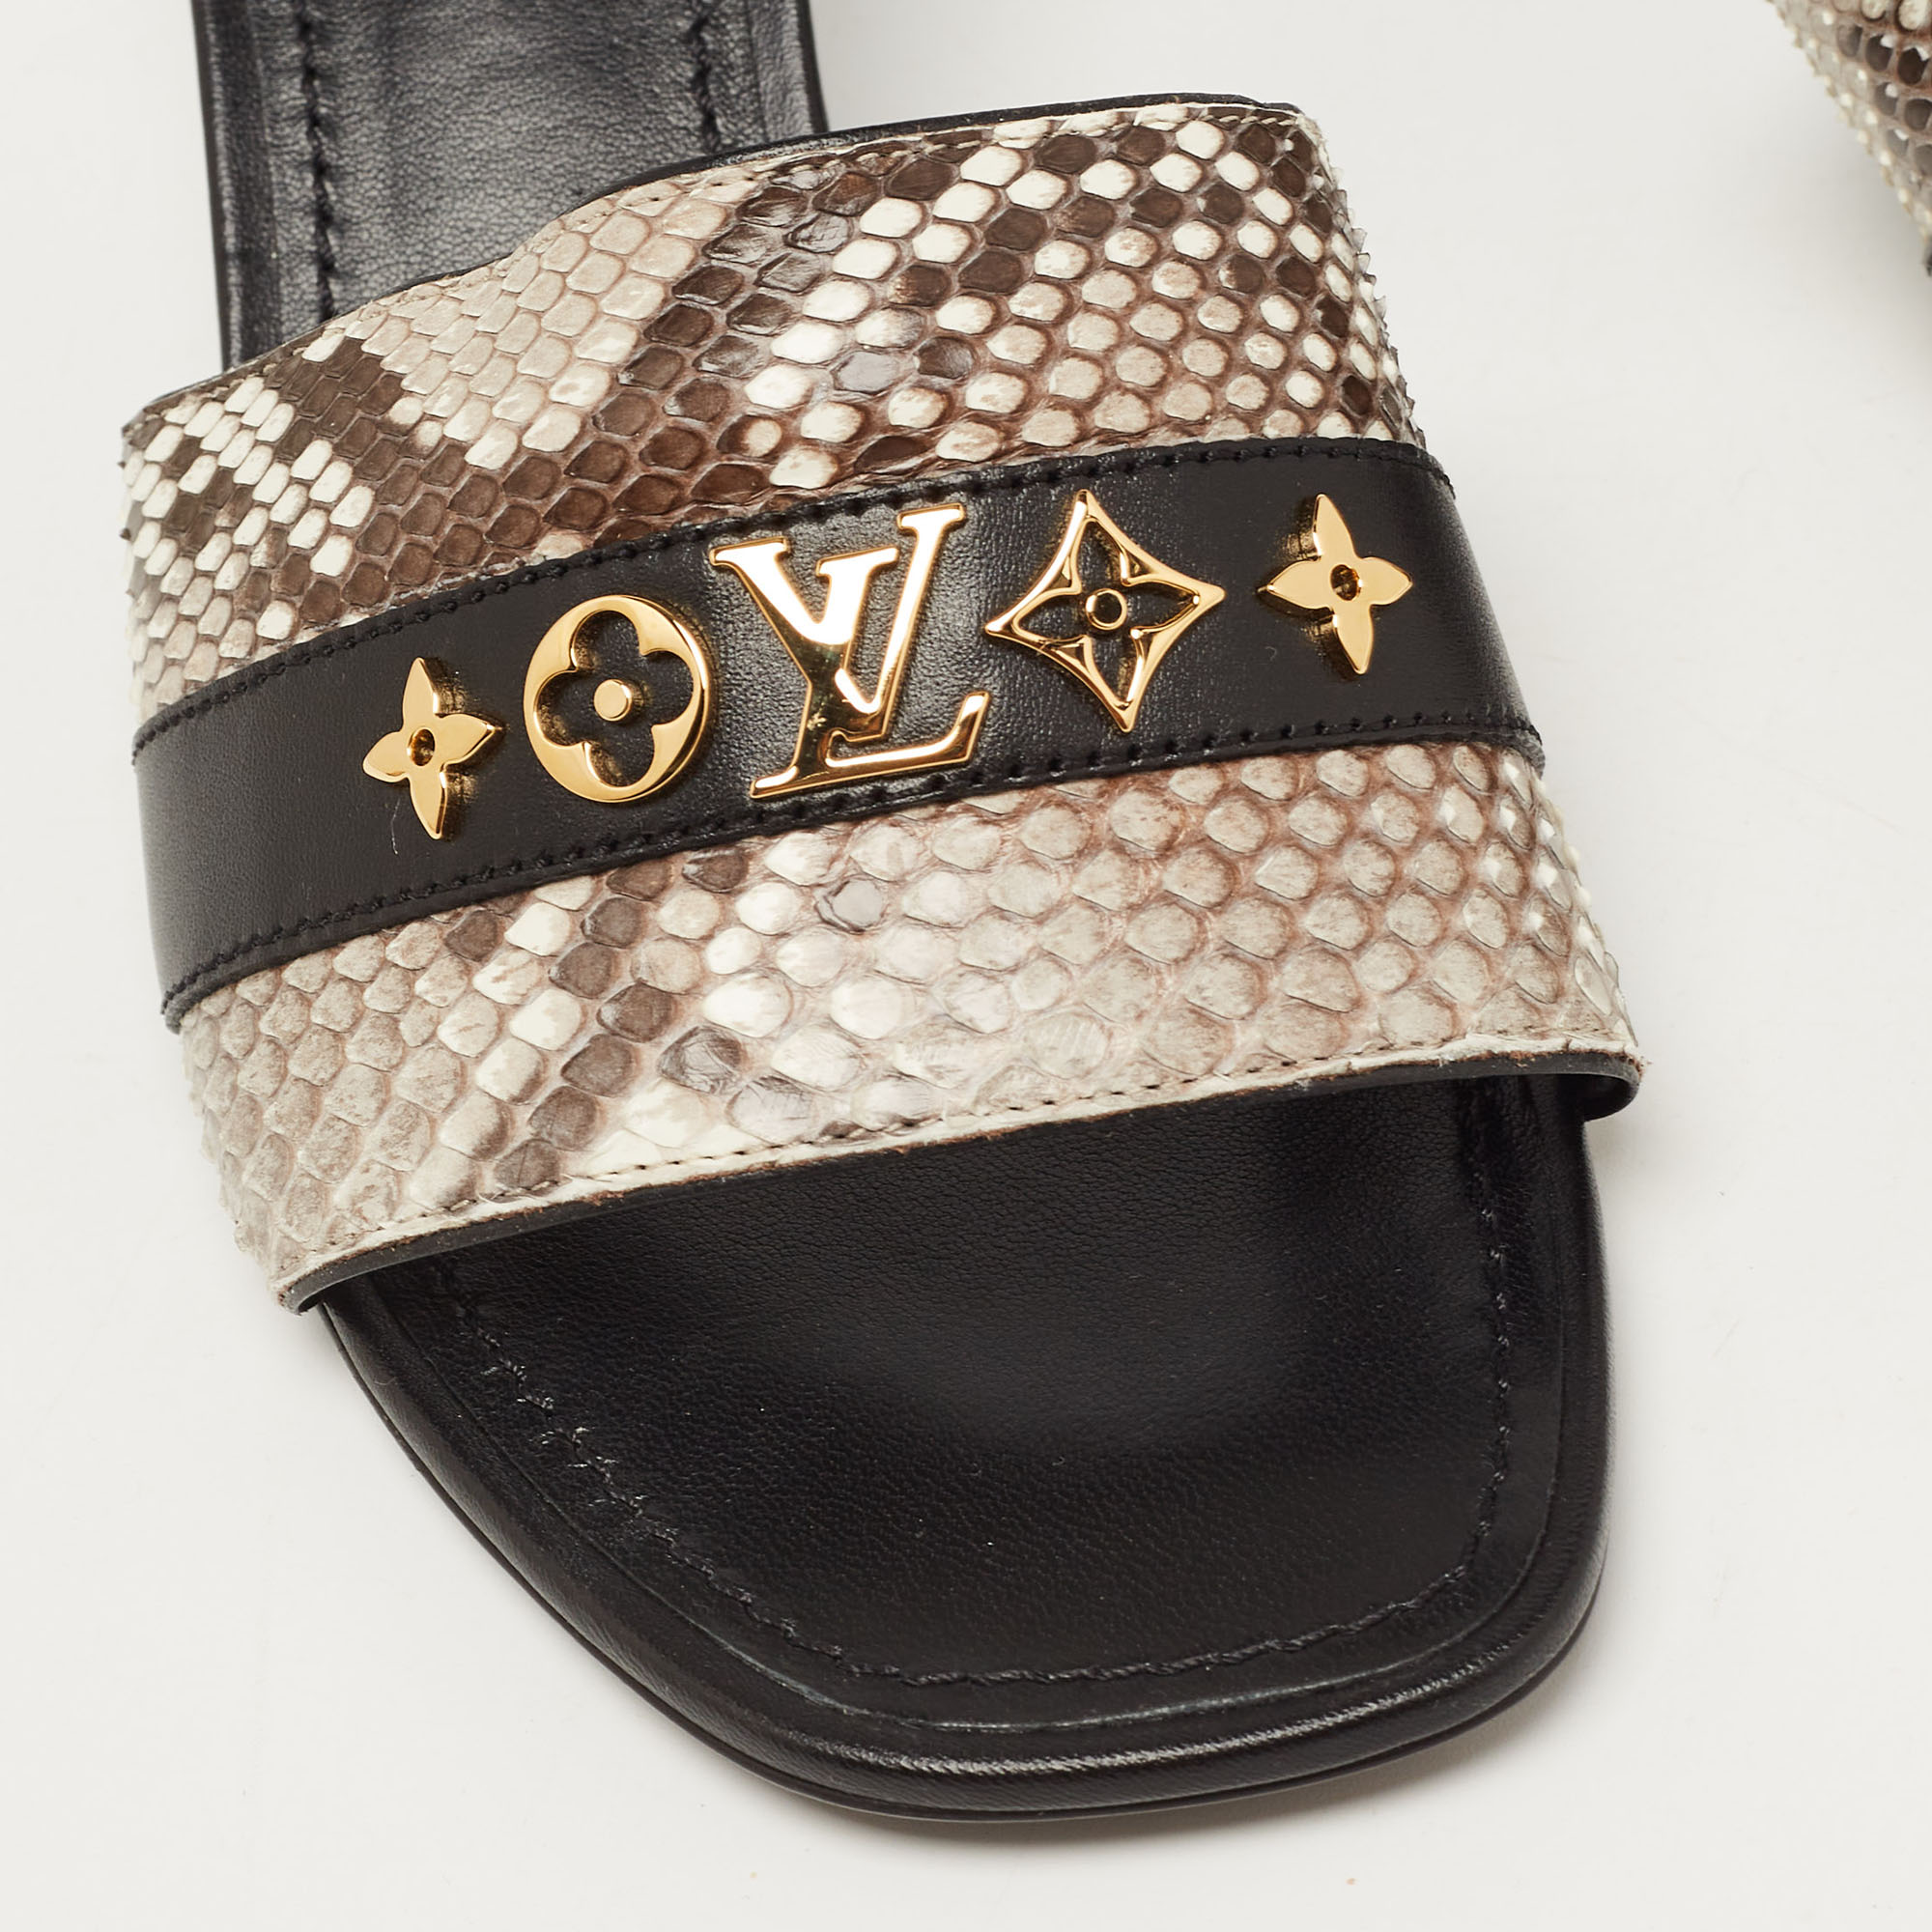 Louis Vuitton Tricolor Snakeskin Slide Sandals Size 37